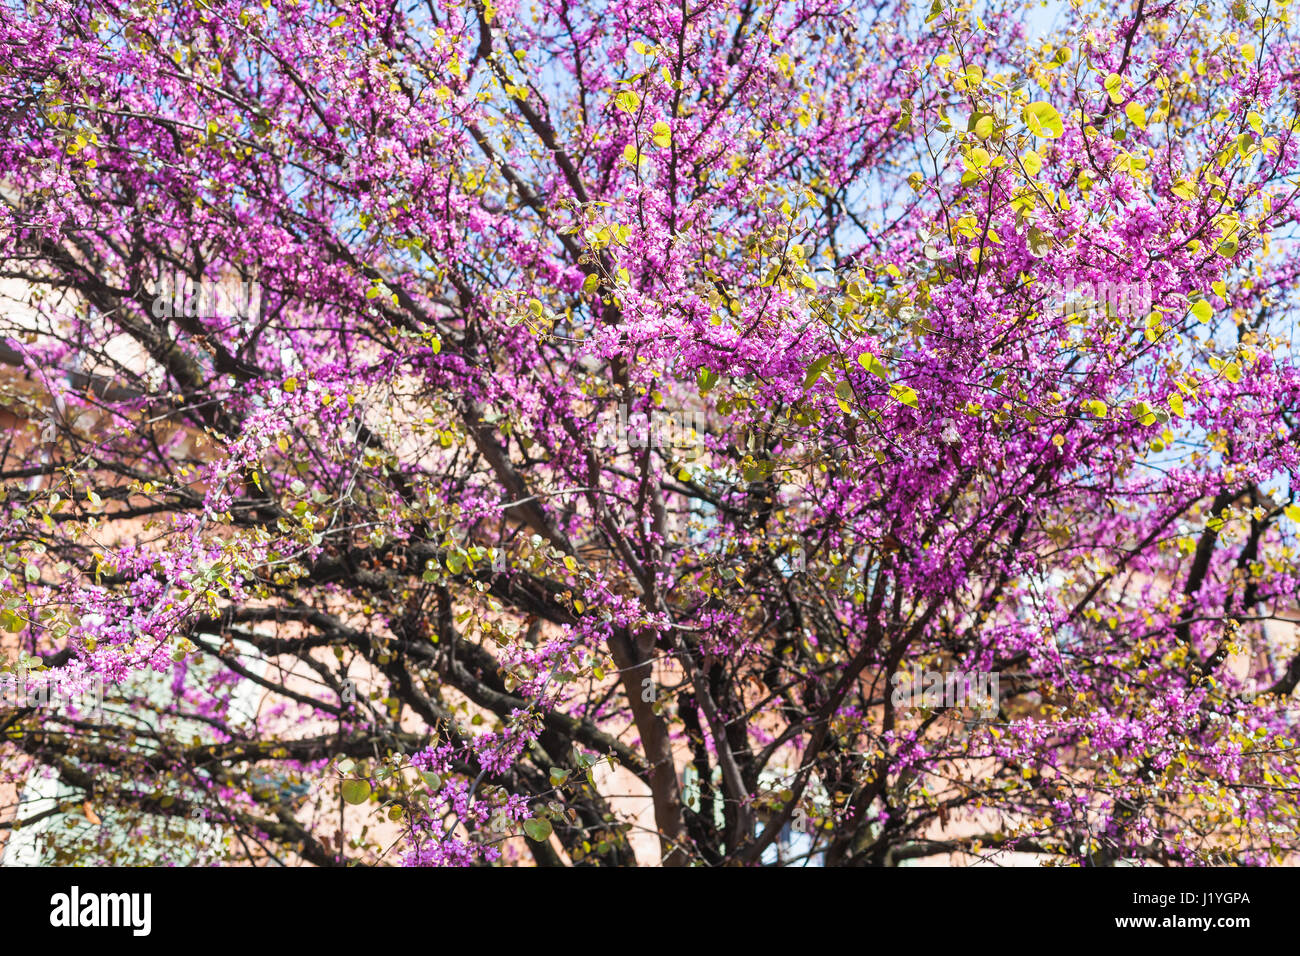 Voyage d'Italie - rose Floraison de Cercis siliquastrum (arbre de Judée) dans la ville de Vérone au printemps Banque D'Images